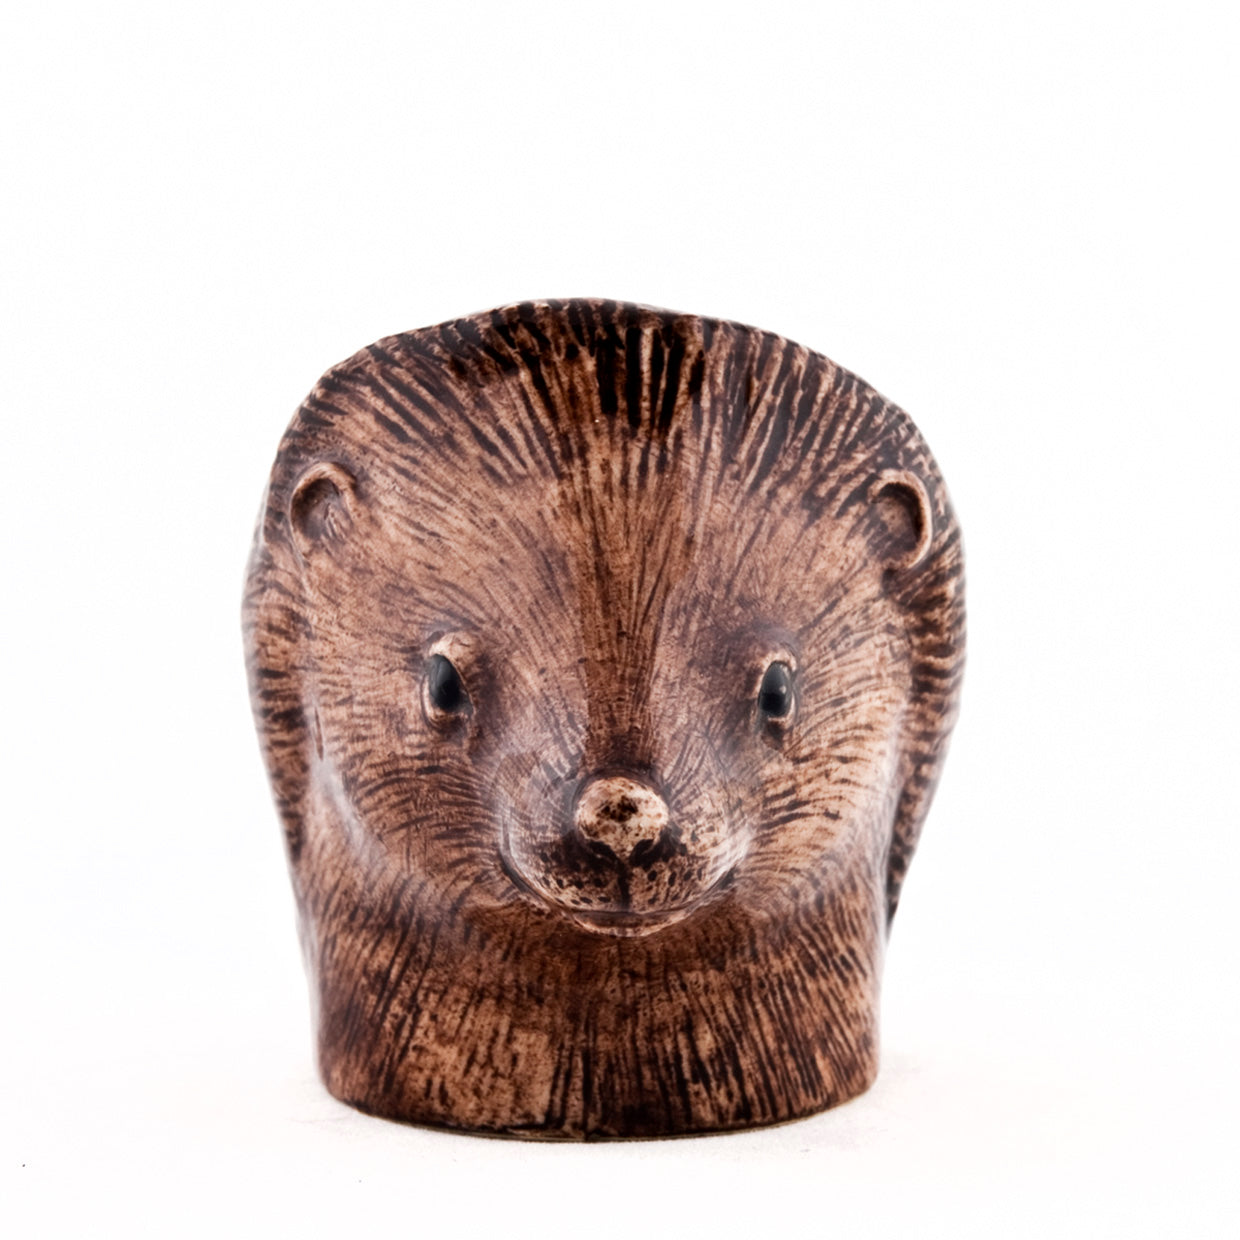 Hedgehog Face Egg Cup